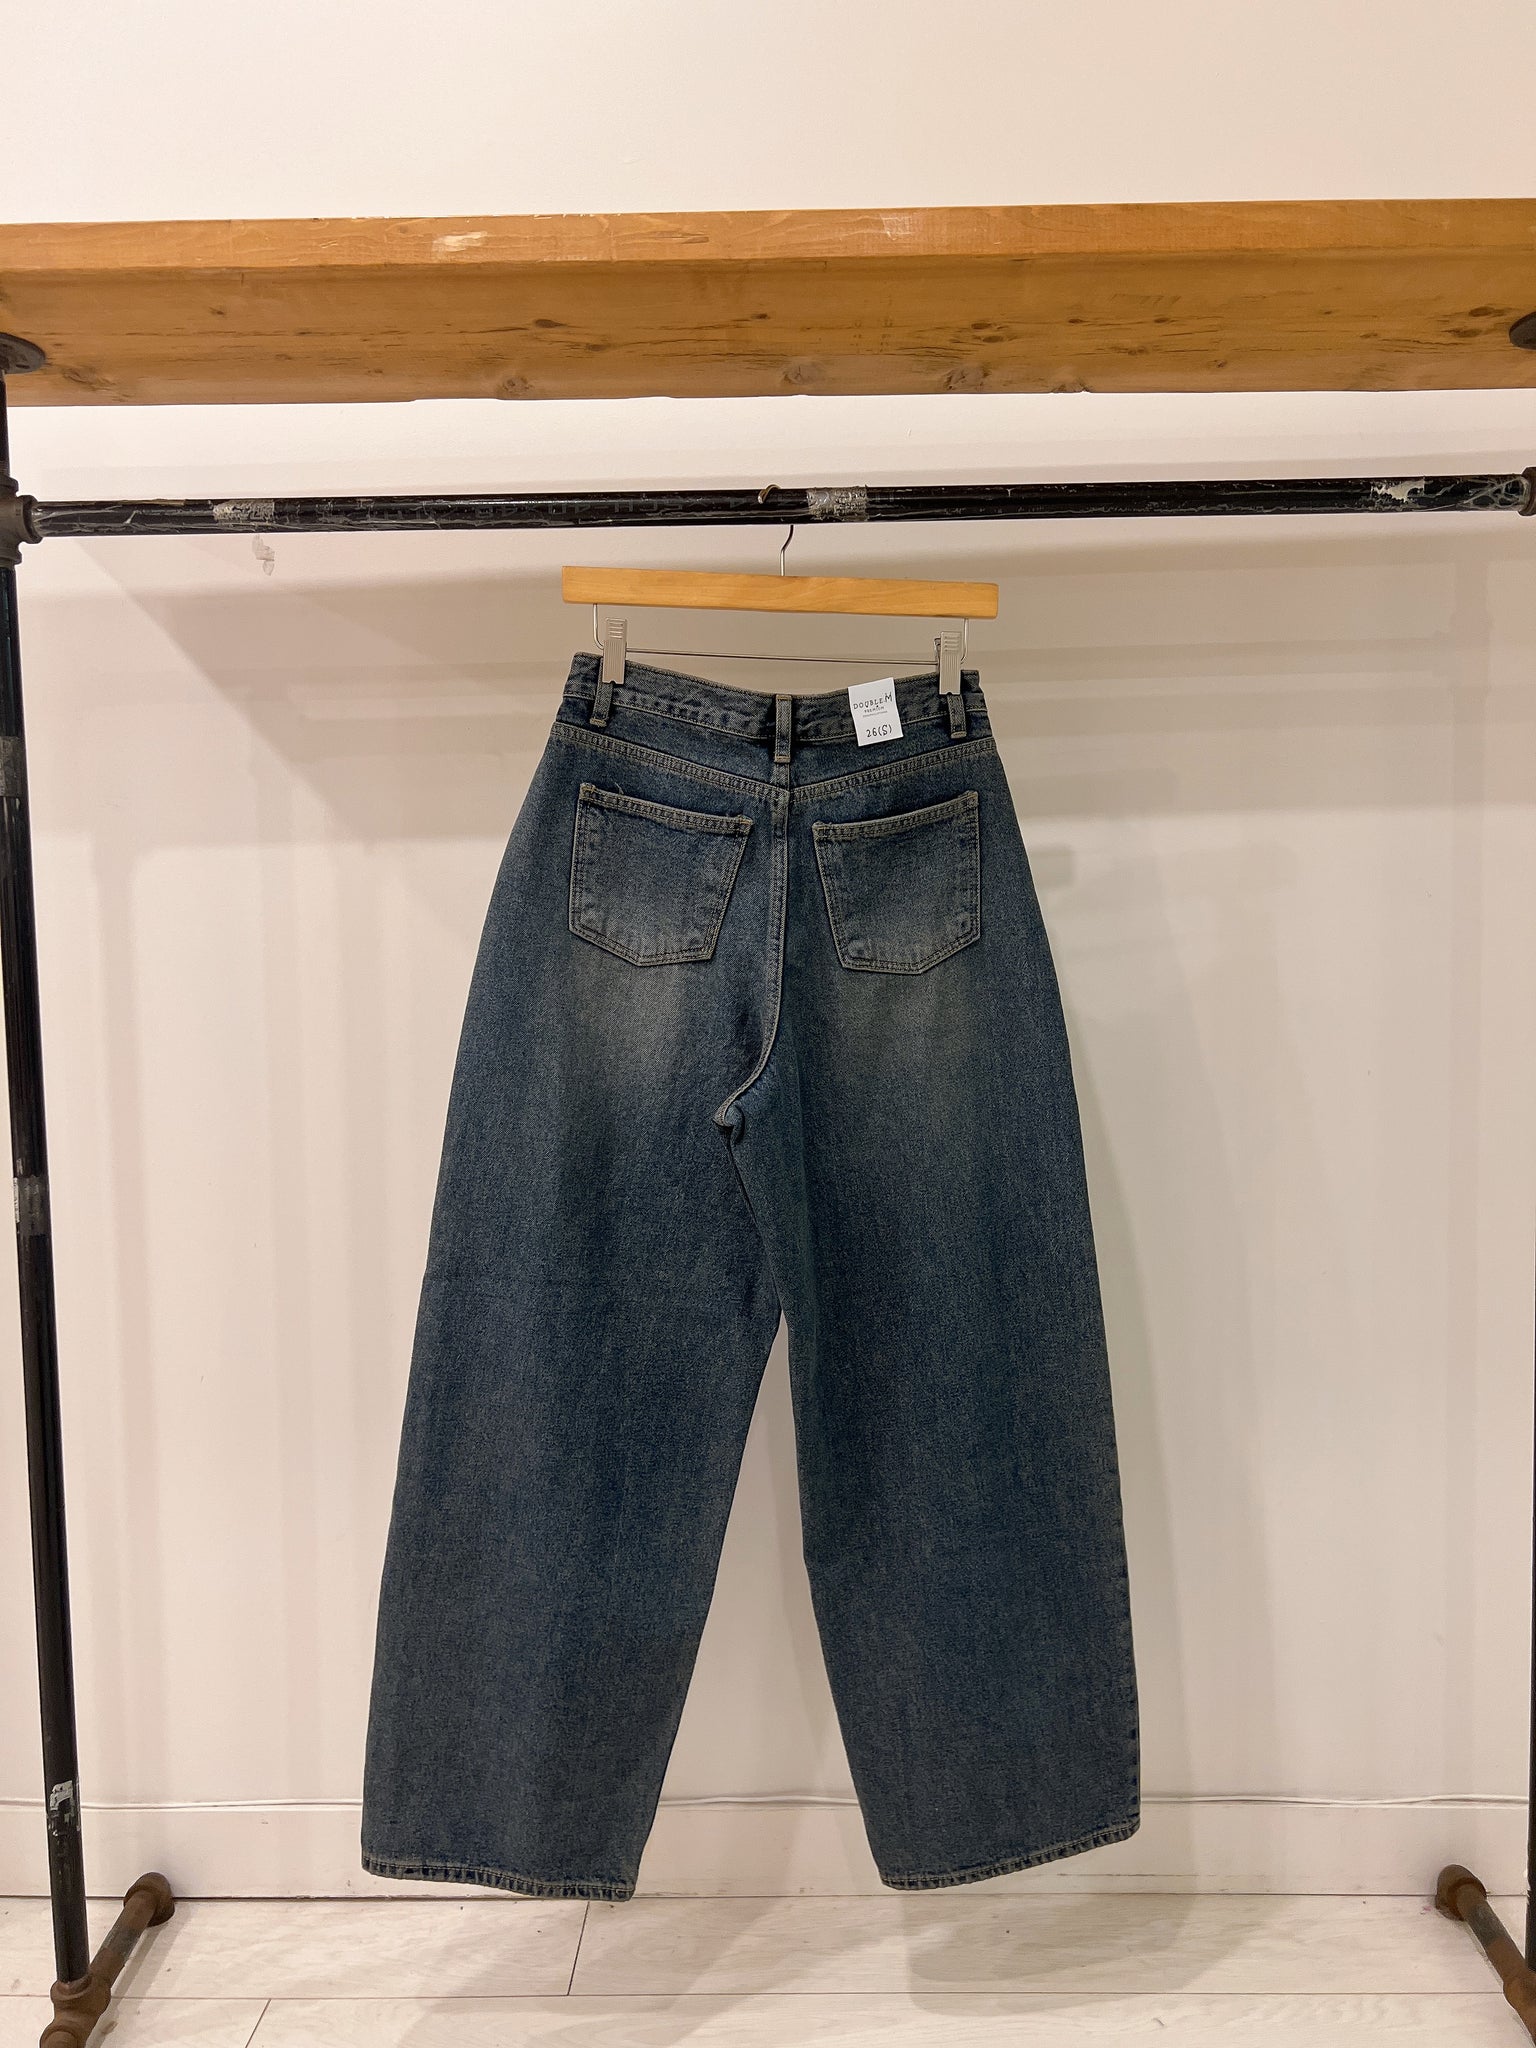 DANGO2 Wide legged jeans